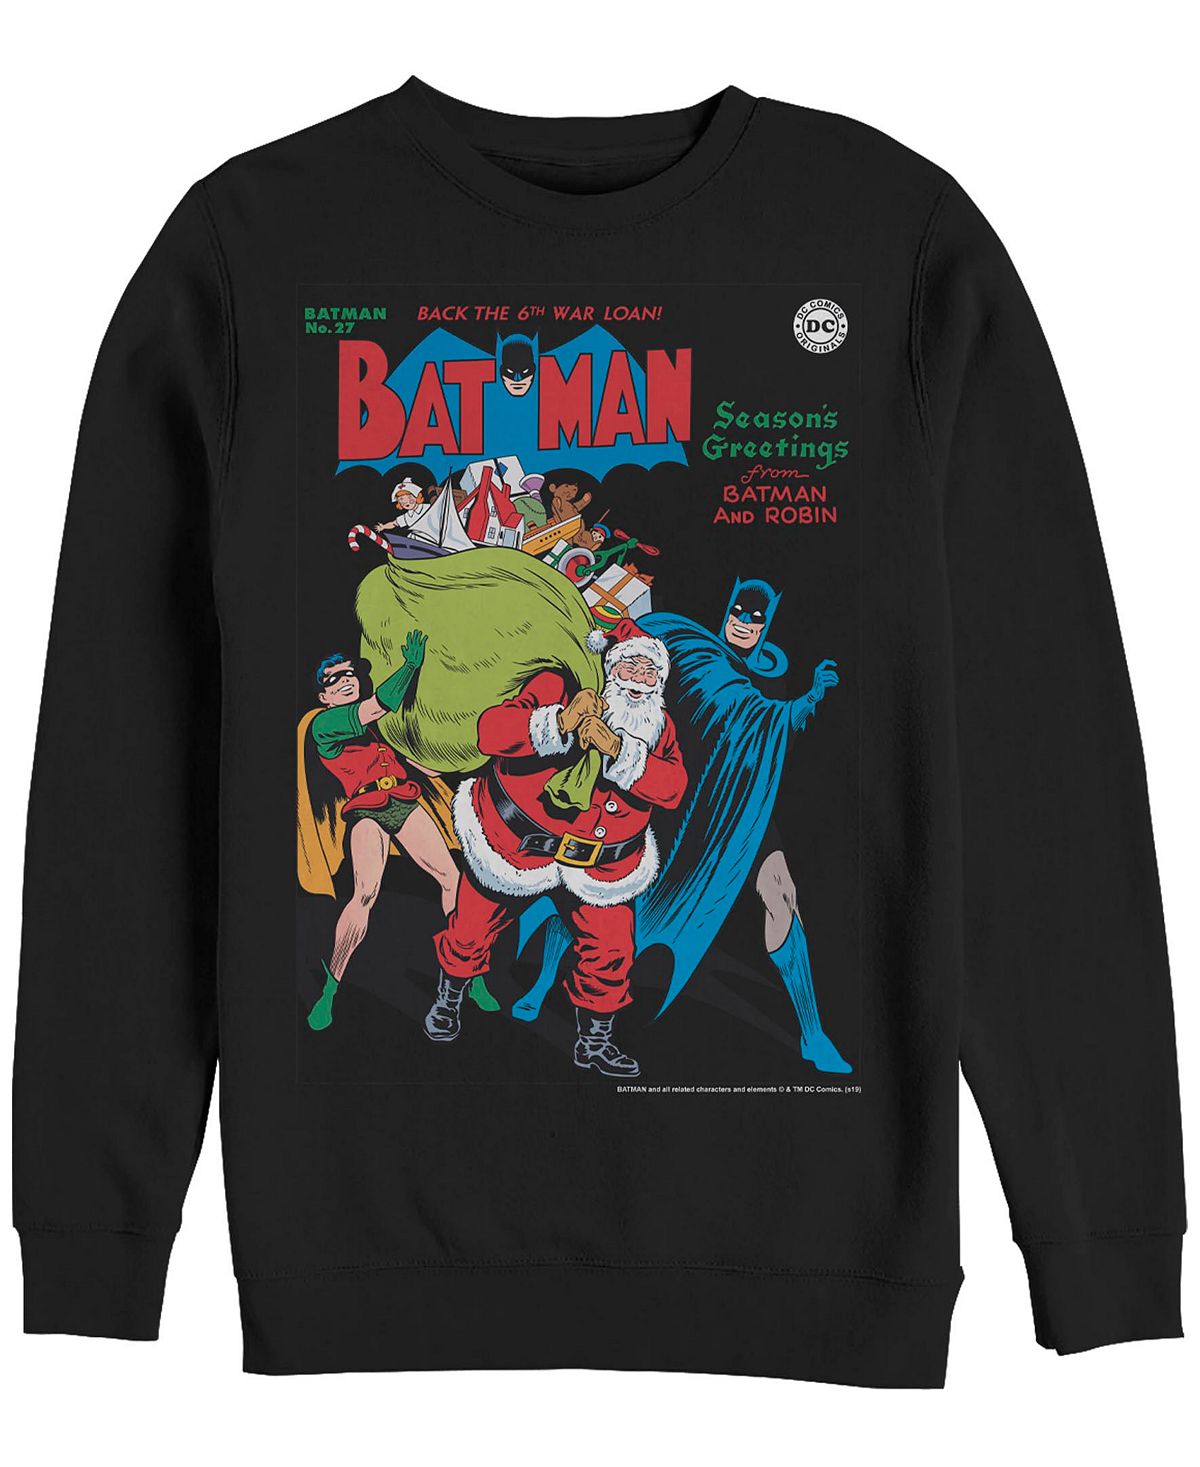 Мужской флисовый пуловер batman seasons greetings crew Fifth Sun, черный очки dc comics чудо женщина детские солнцезащитные